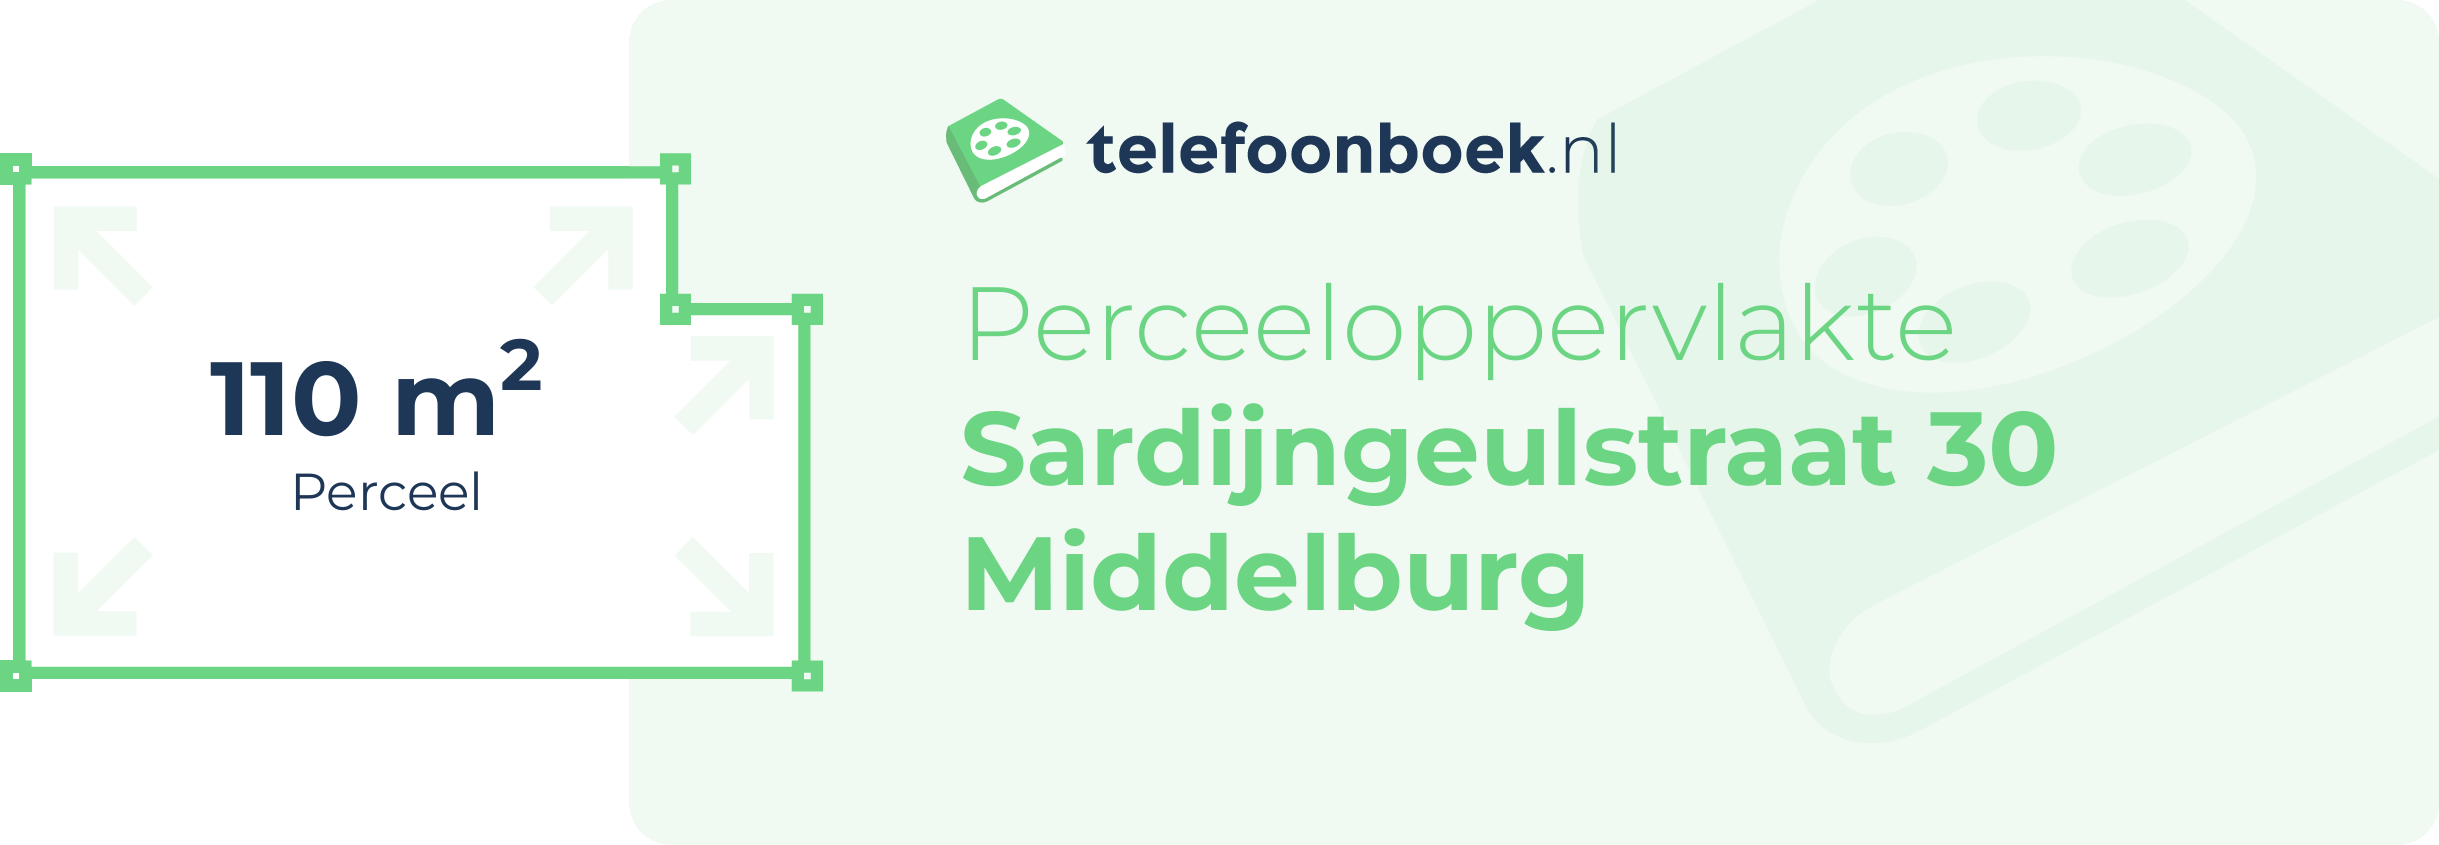 Perceeloppervlakte Sardijngeulstraat 30 Middelburg